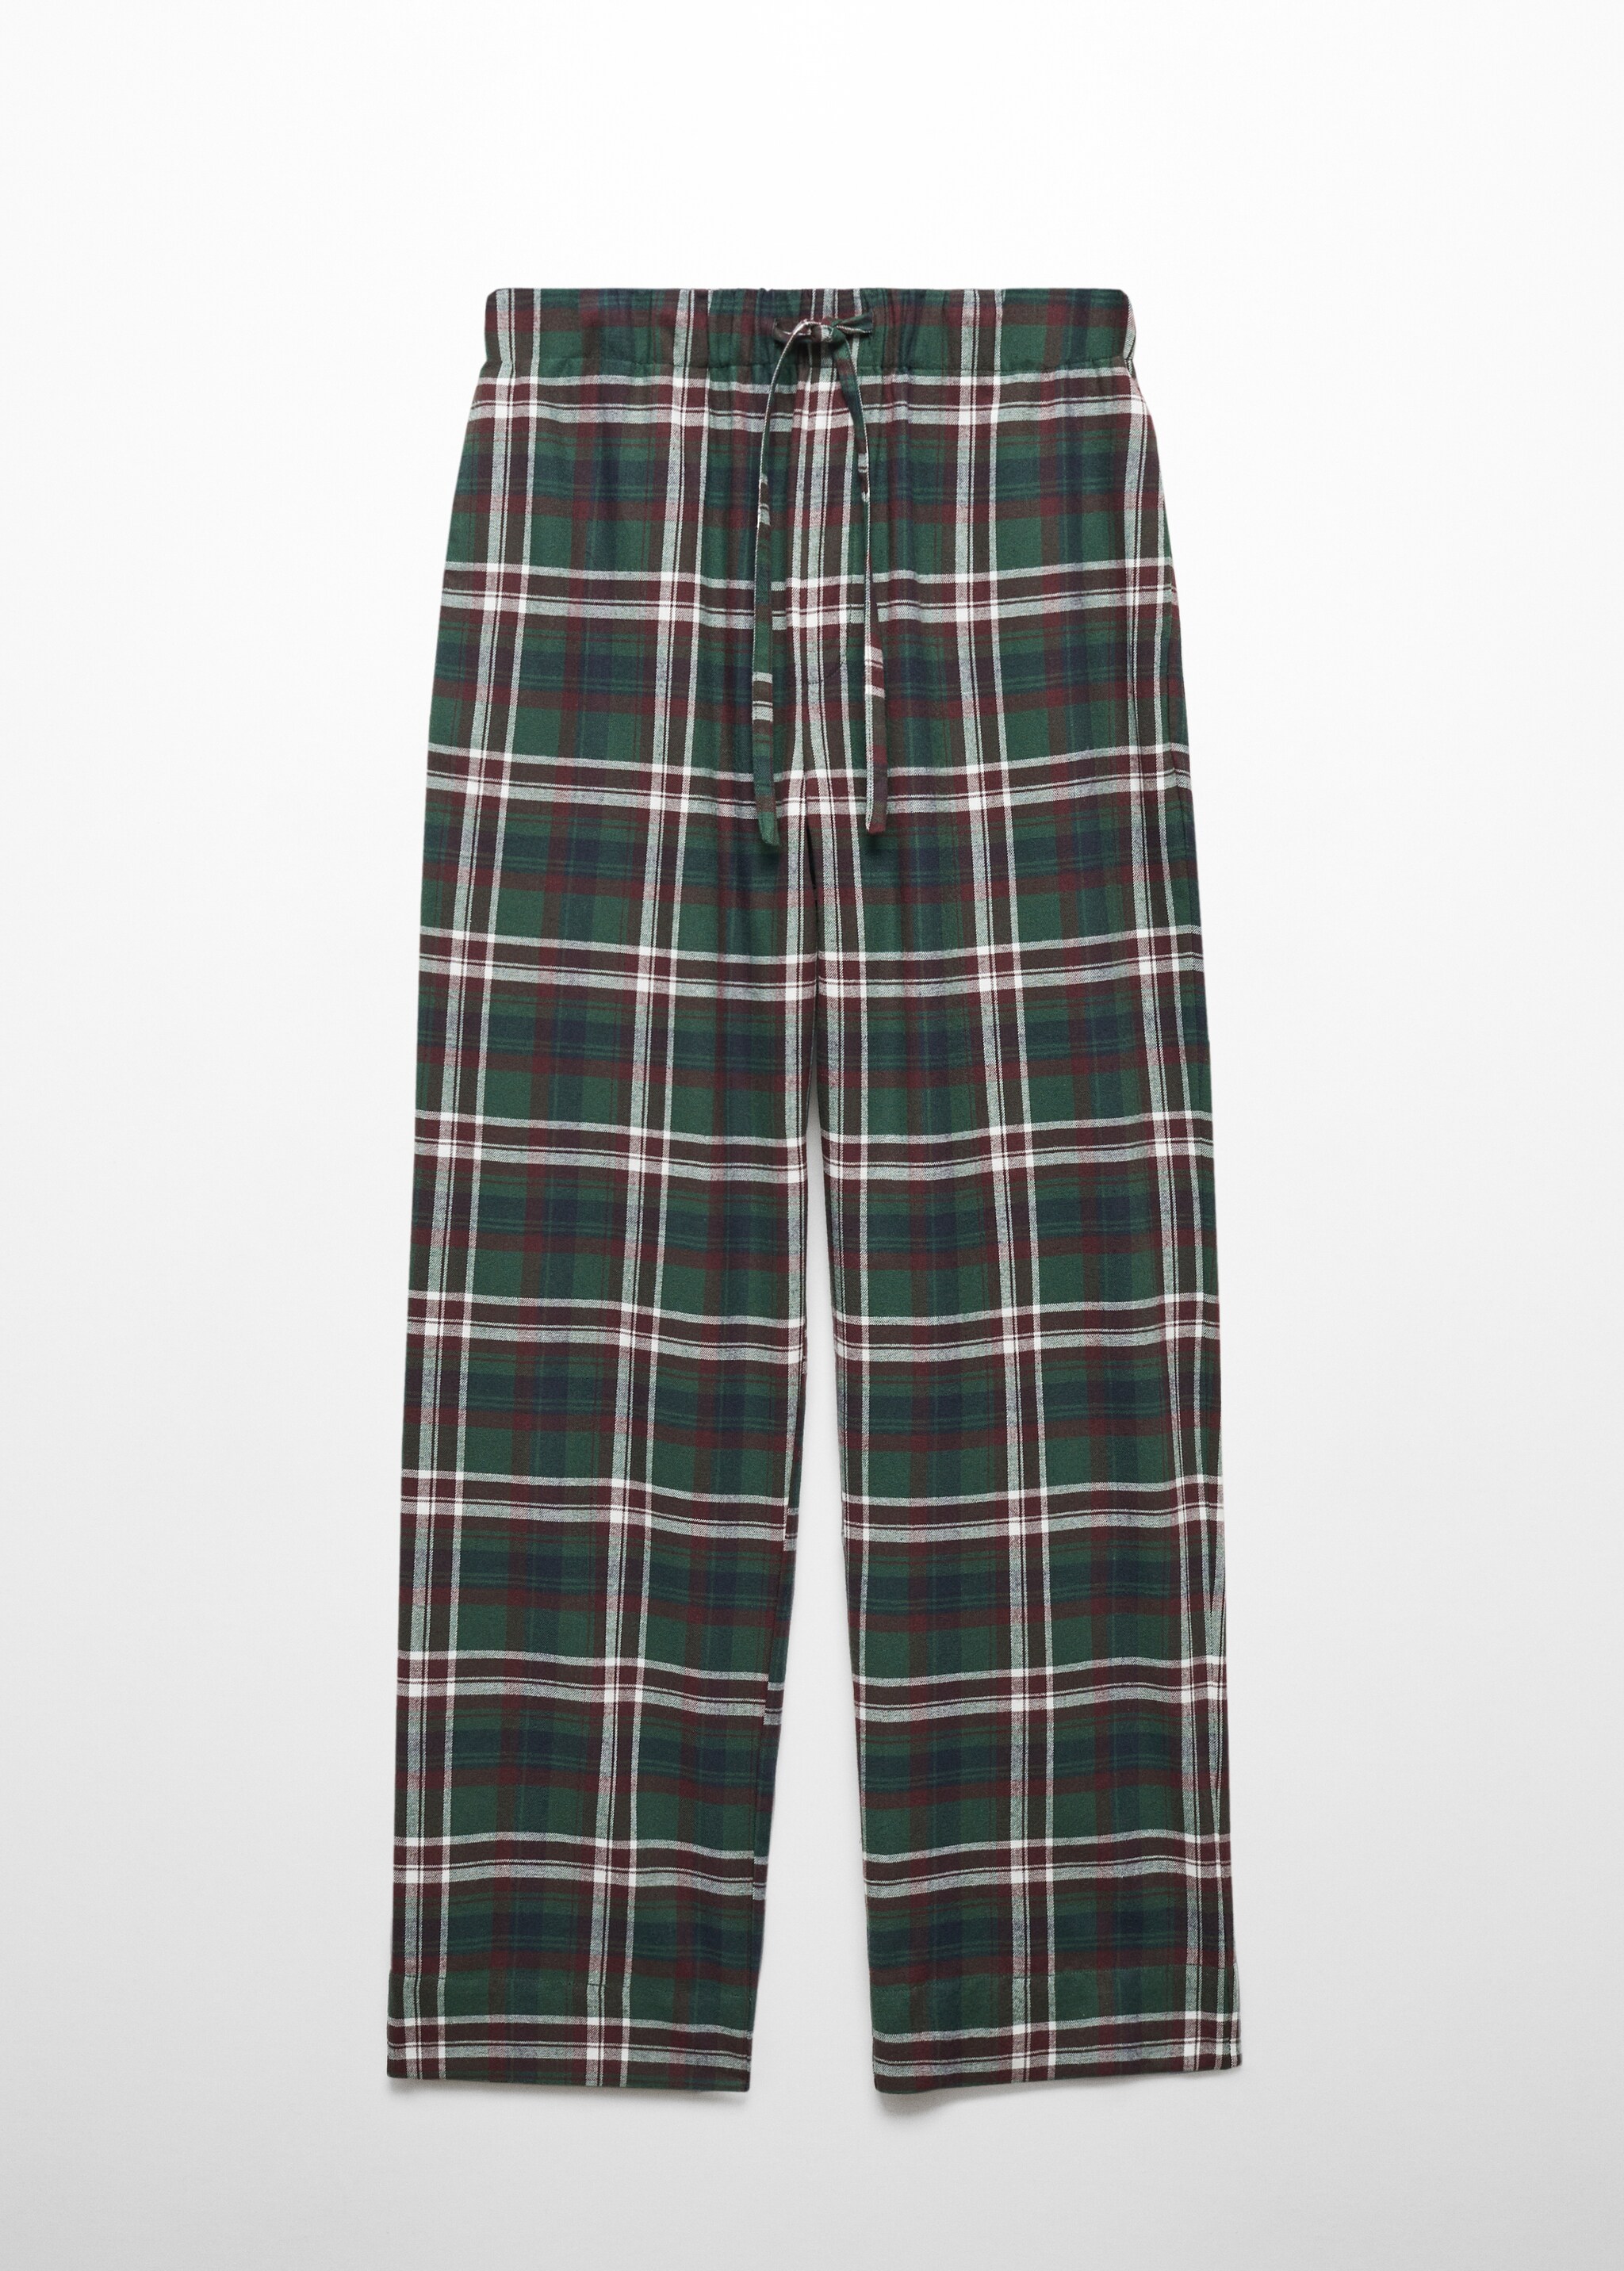 Pantalon pyjama coton flanelle - Article sans modèle